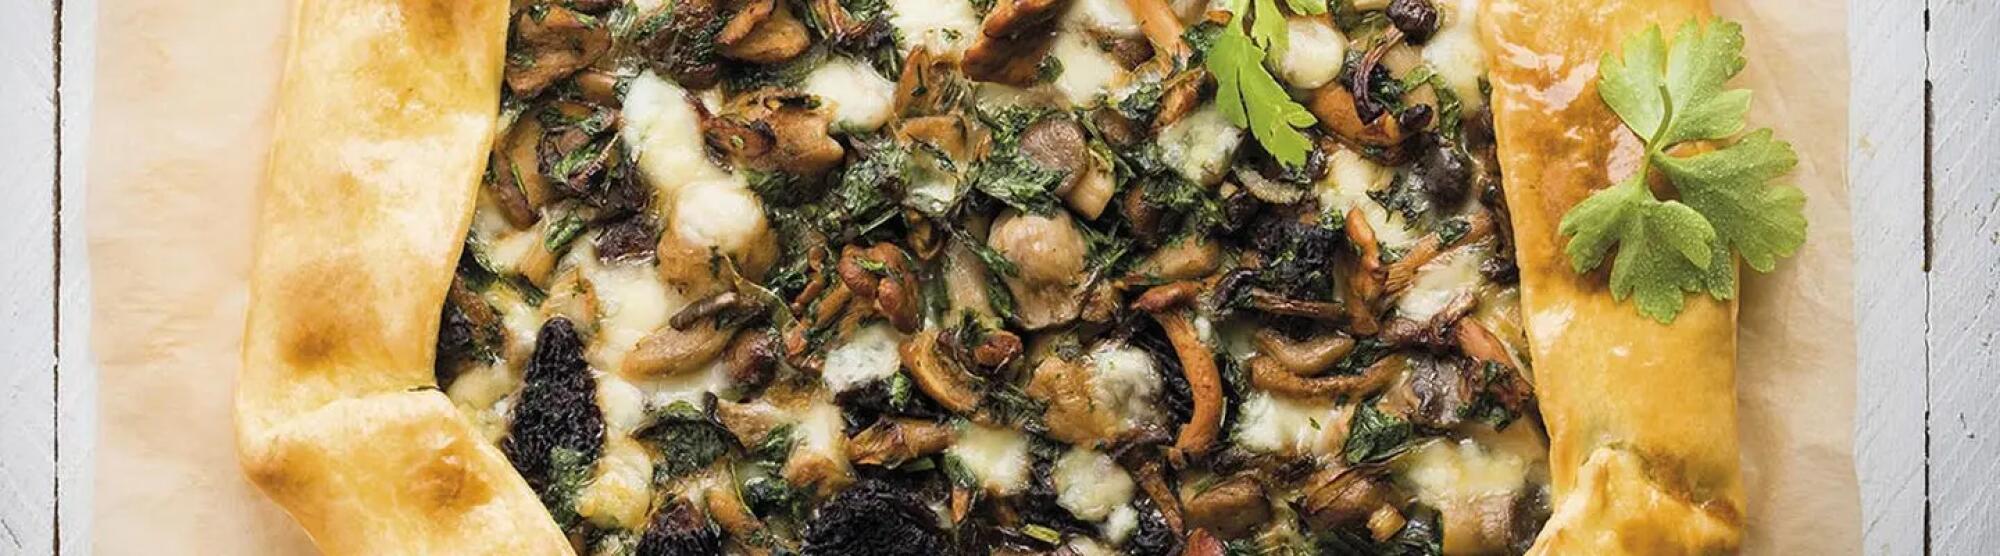 Recette : Tarte rustique aux champignons et fromage à raclette